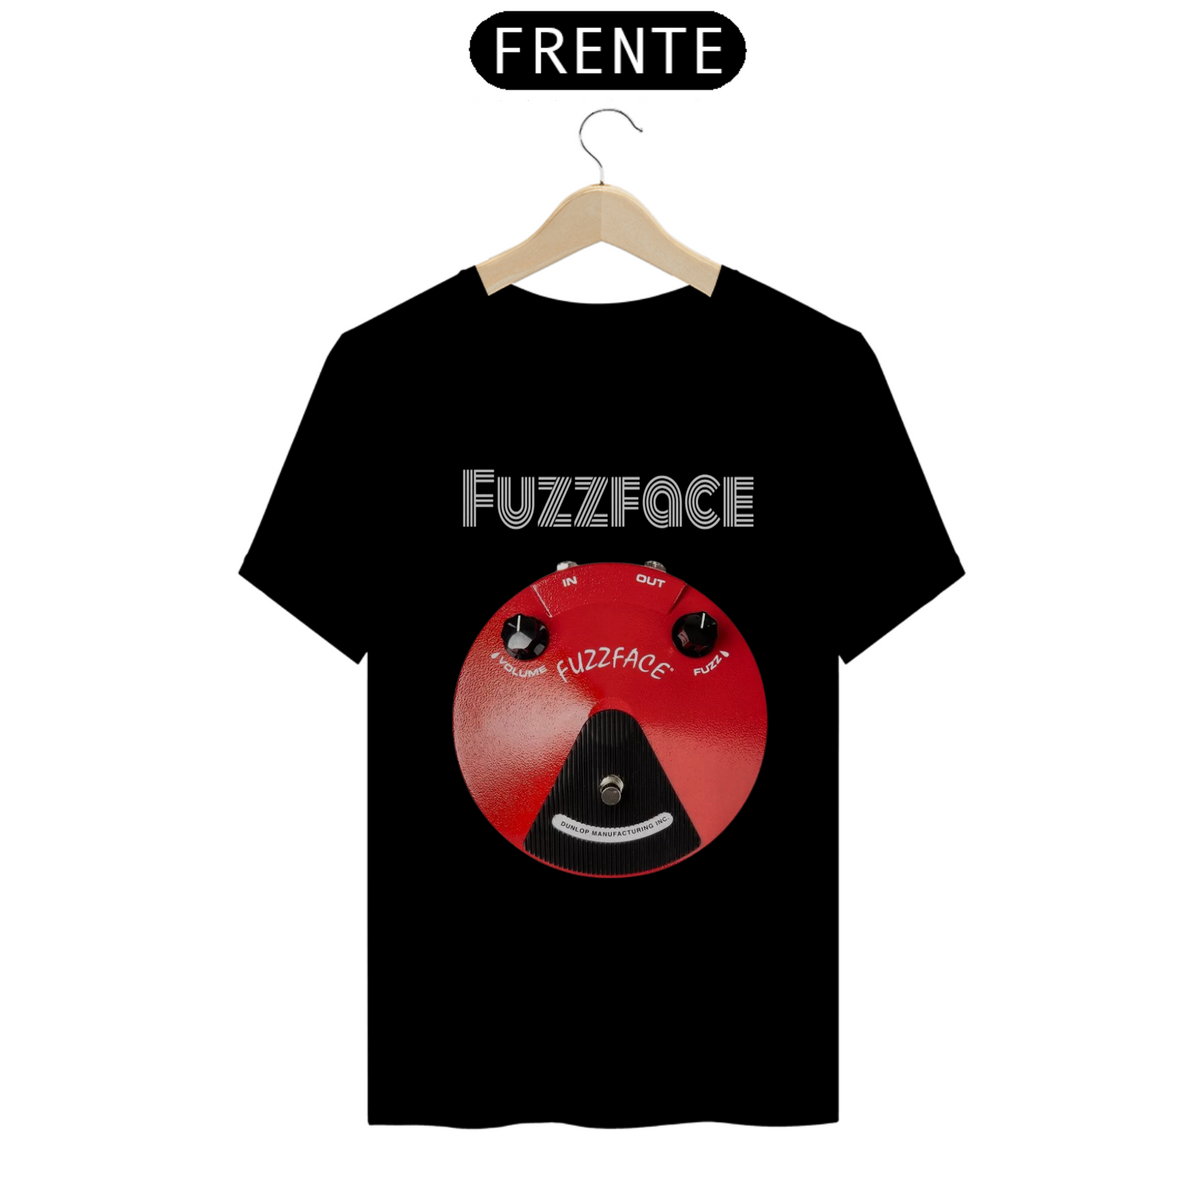 Nome do produto: Fuzzface